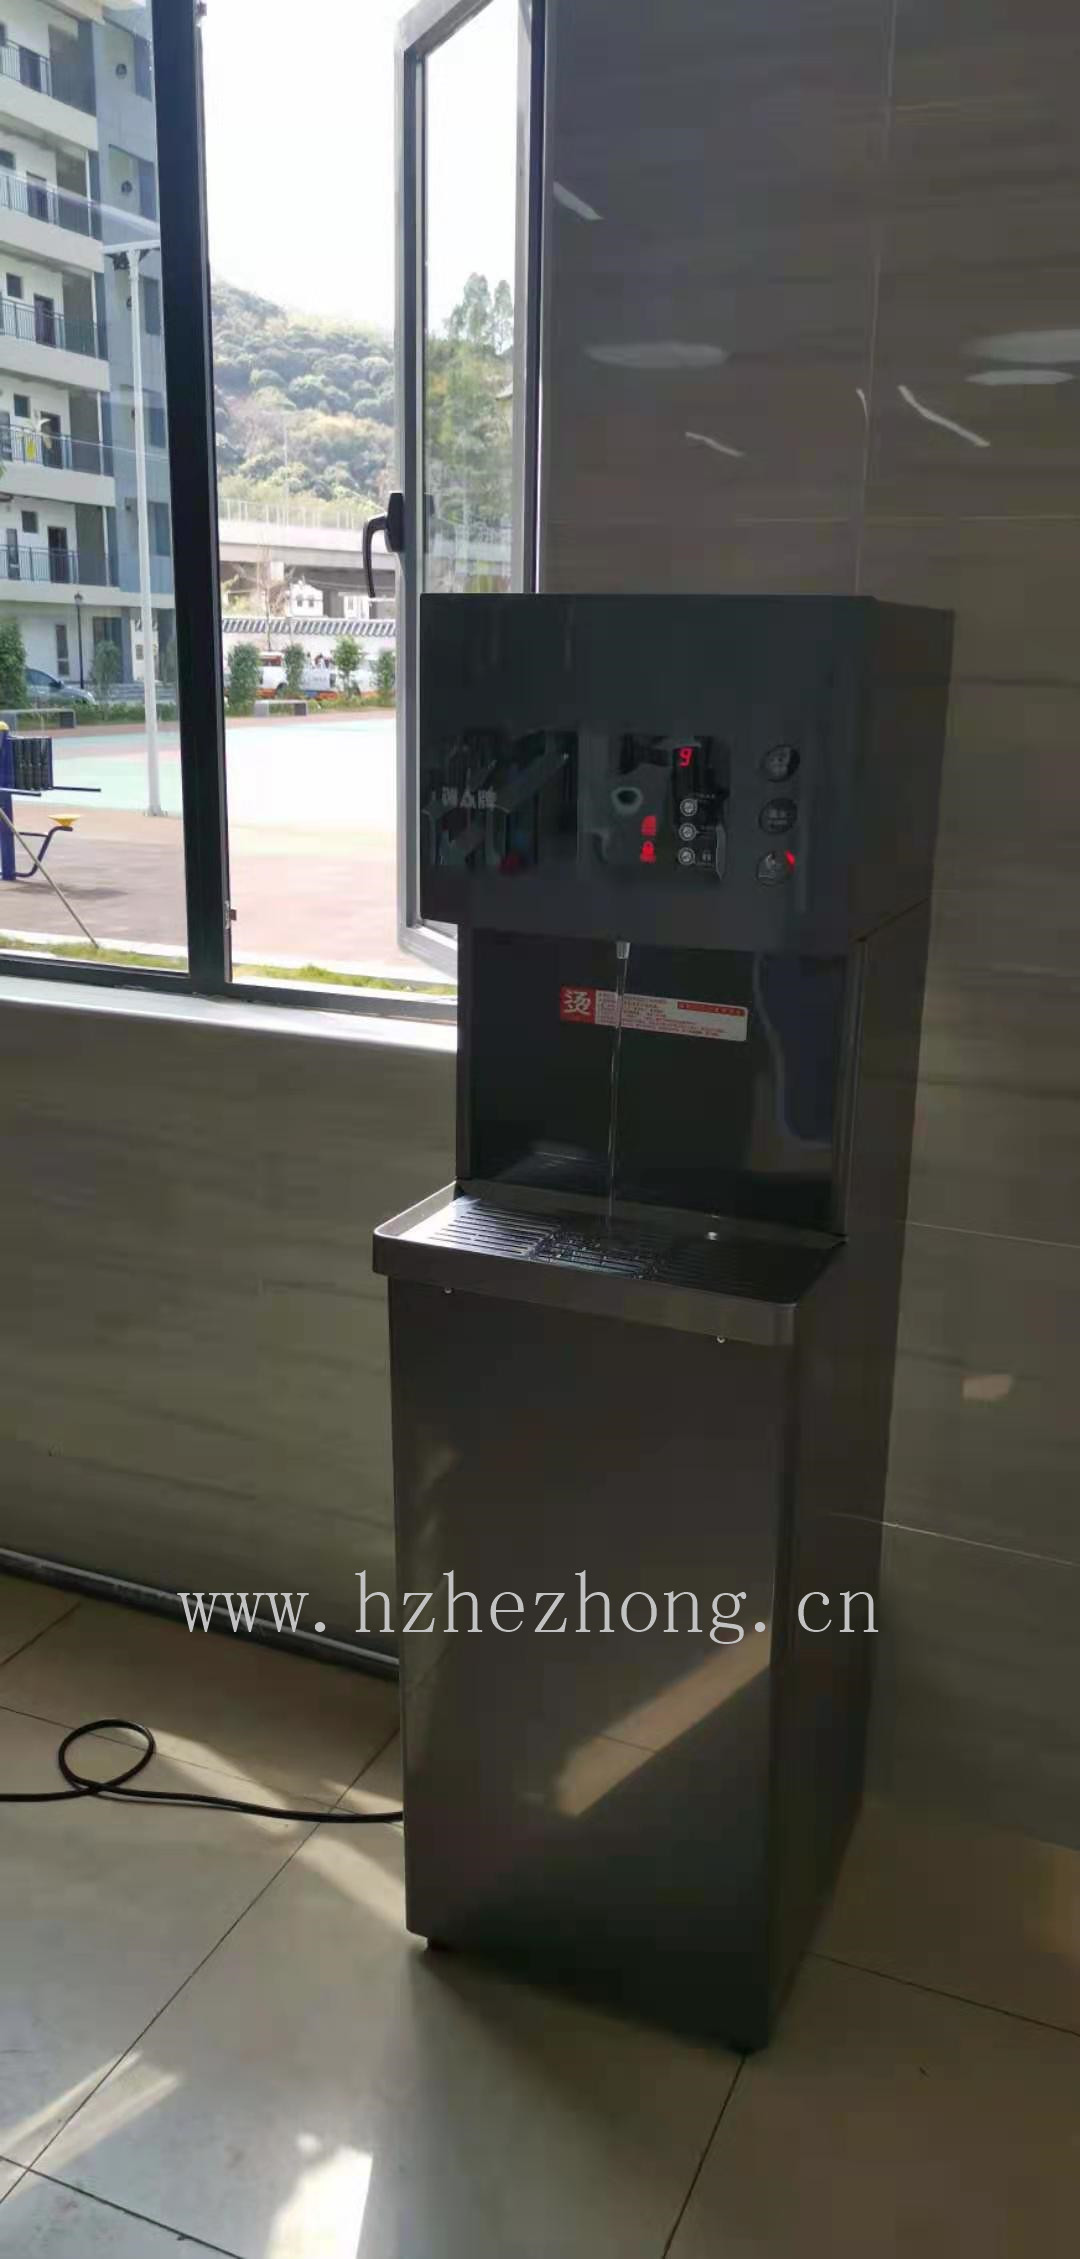 Shenzhen Expressway Co., Ltd. uses ACUO brand water dispenser